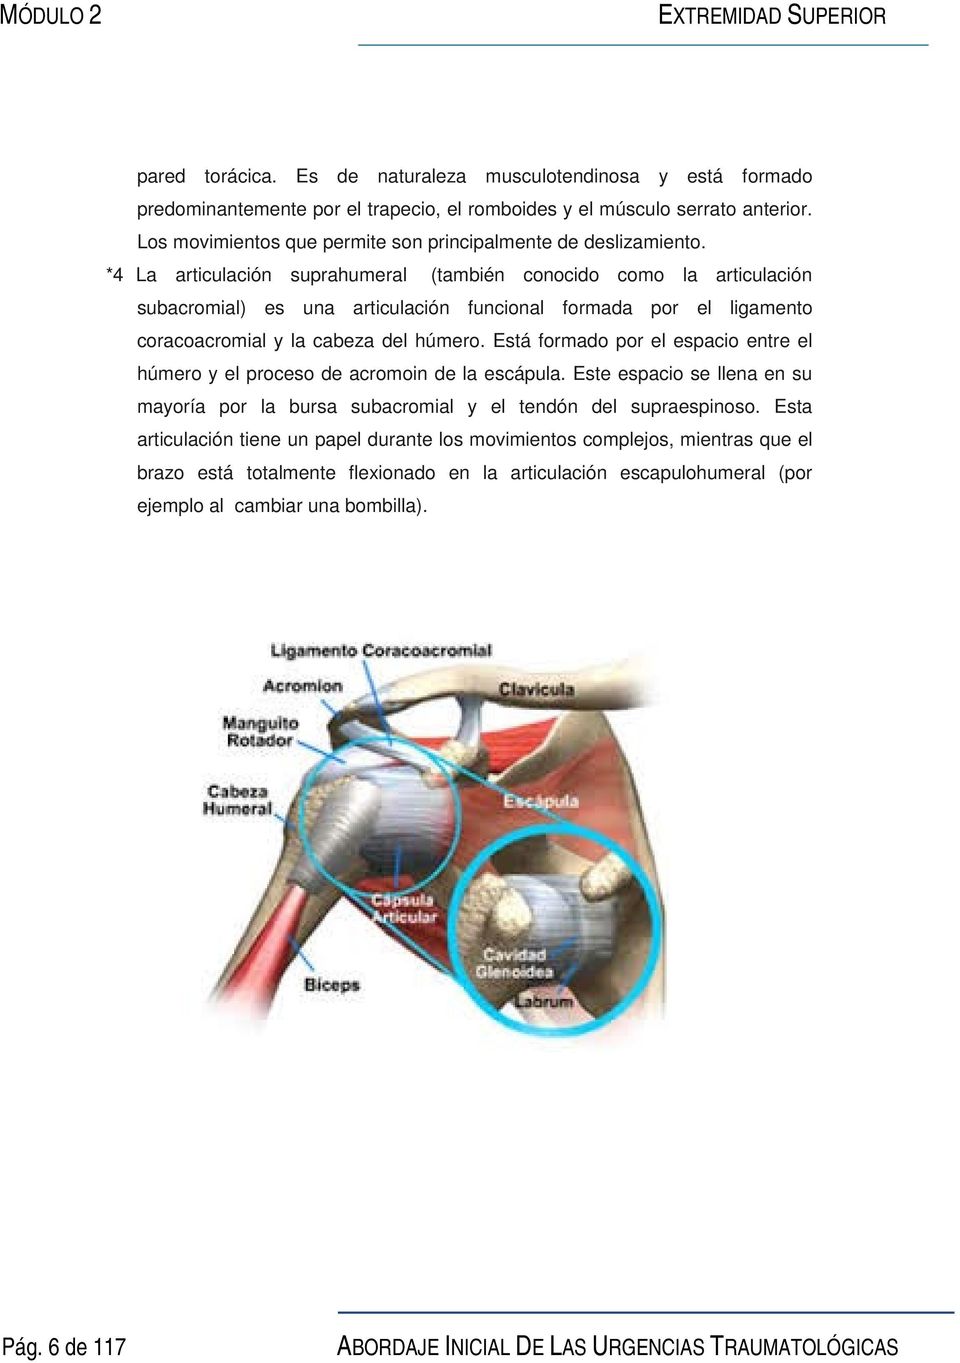 *4 La articulación suprahumeral (también conocido como la articulación subacromial) es una articulación funcional formada por el ligamento coracoacromial y la cabeza del húmero.